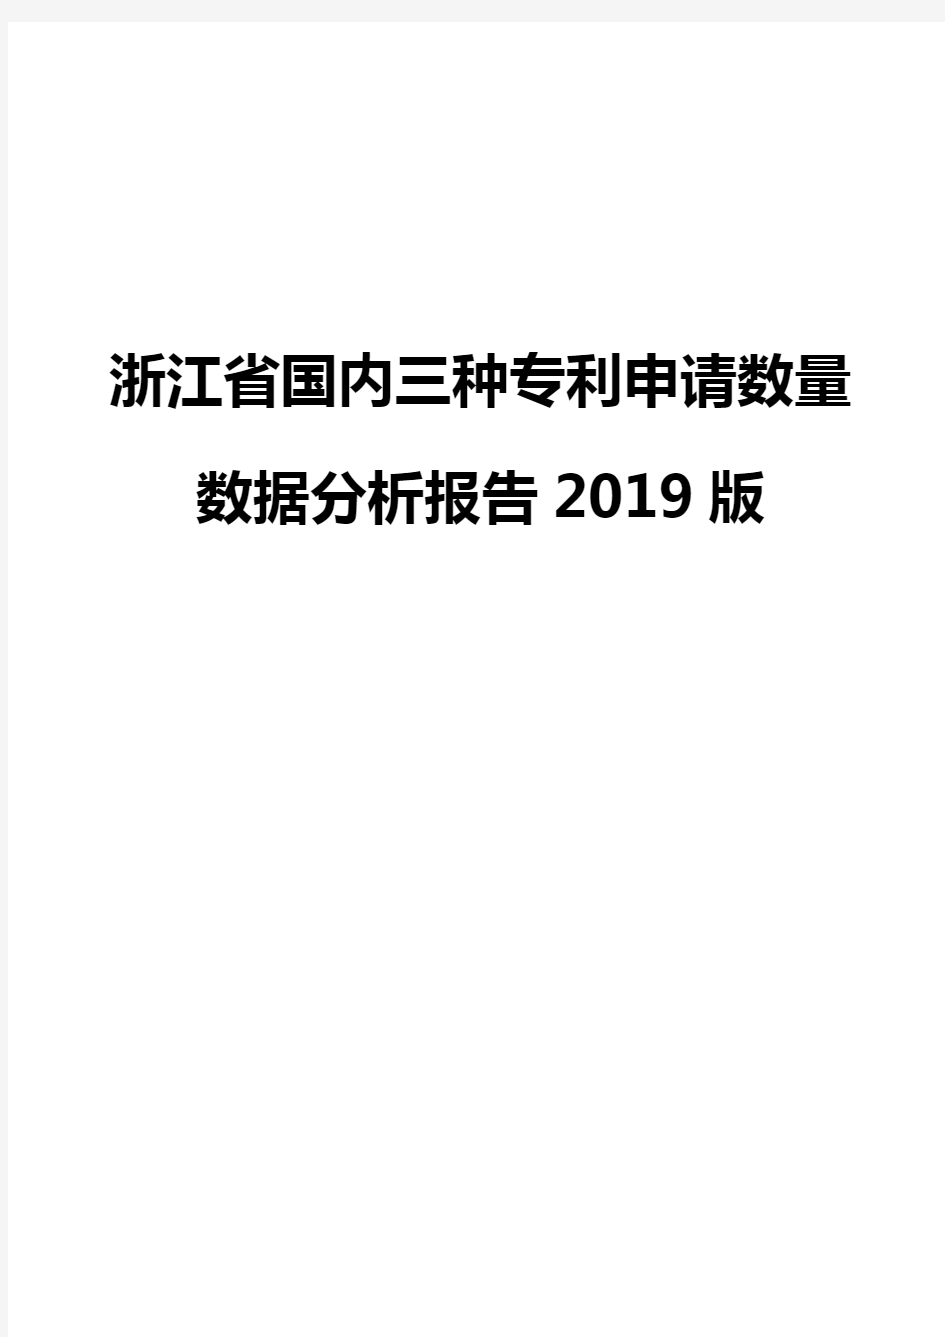 浙江省国内三种专利申请数量数据分析报告2019版